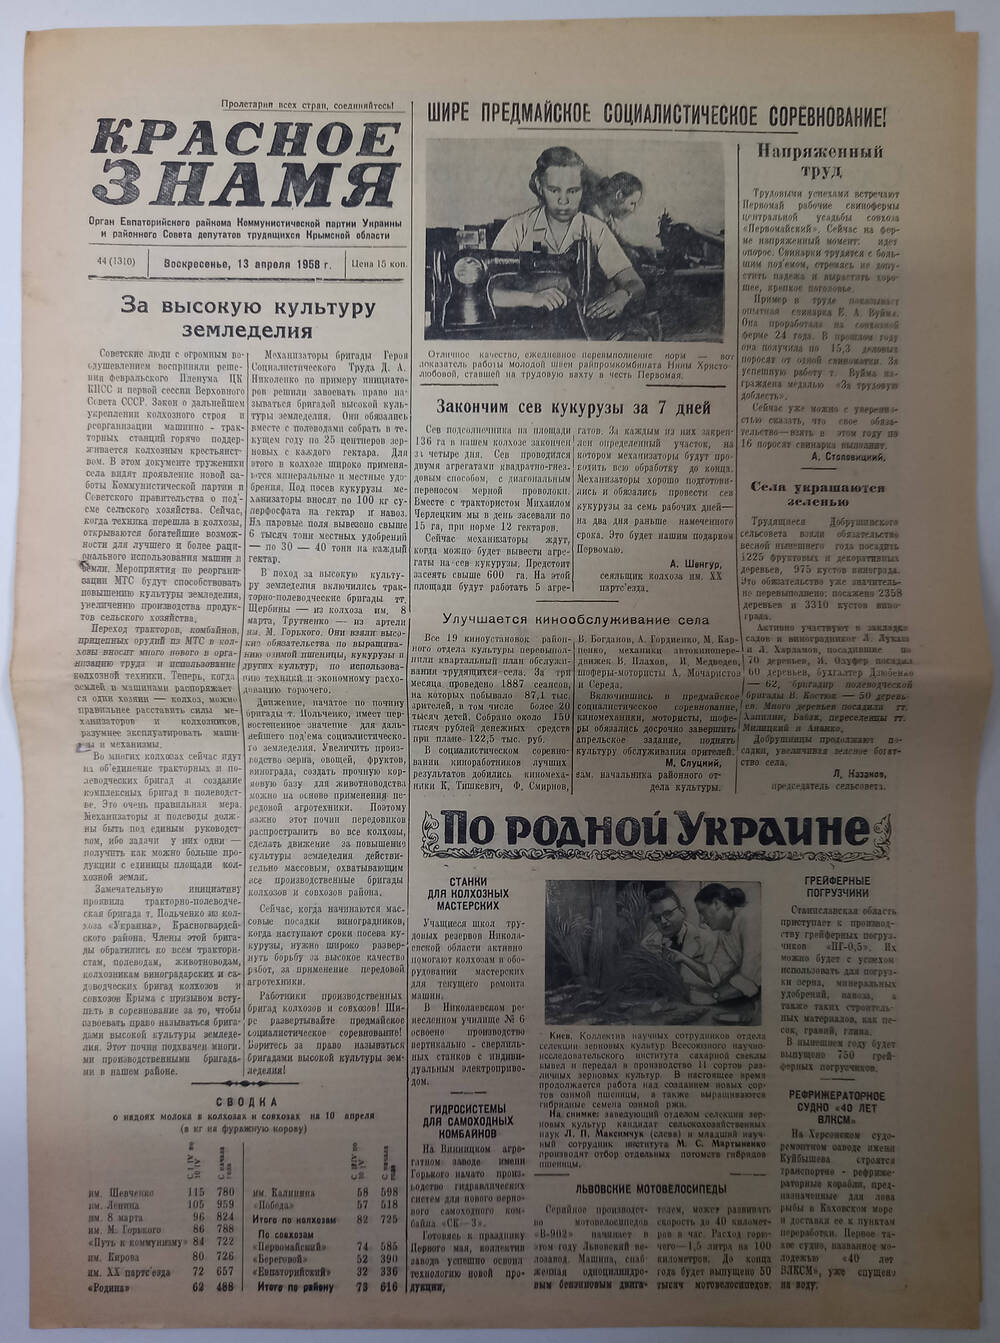 Газета Красное знамя №44(1310) от 13.04.1958 г.